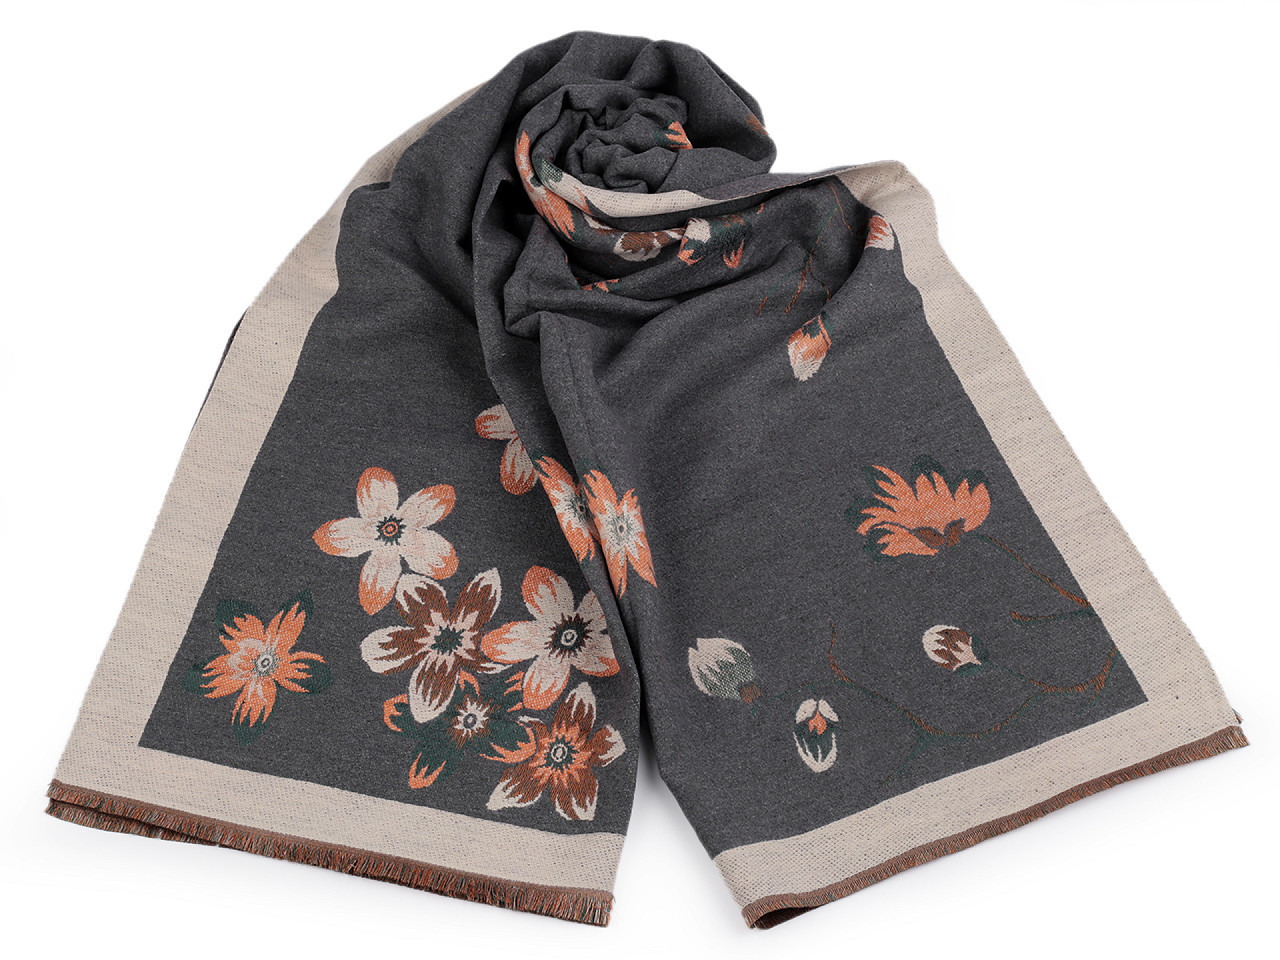 Šátek / šála typu kašmír s třásněmi, květy 65x190 cm, barva 7 šedá béžová světlá